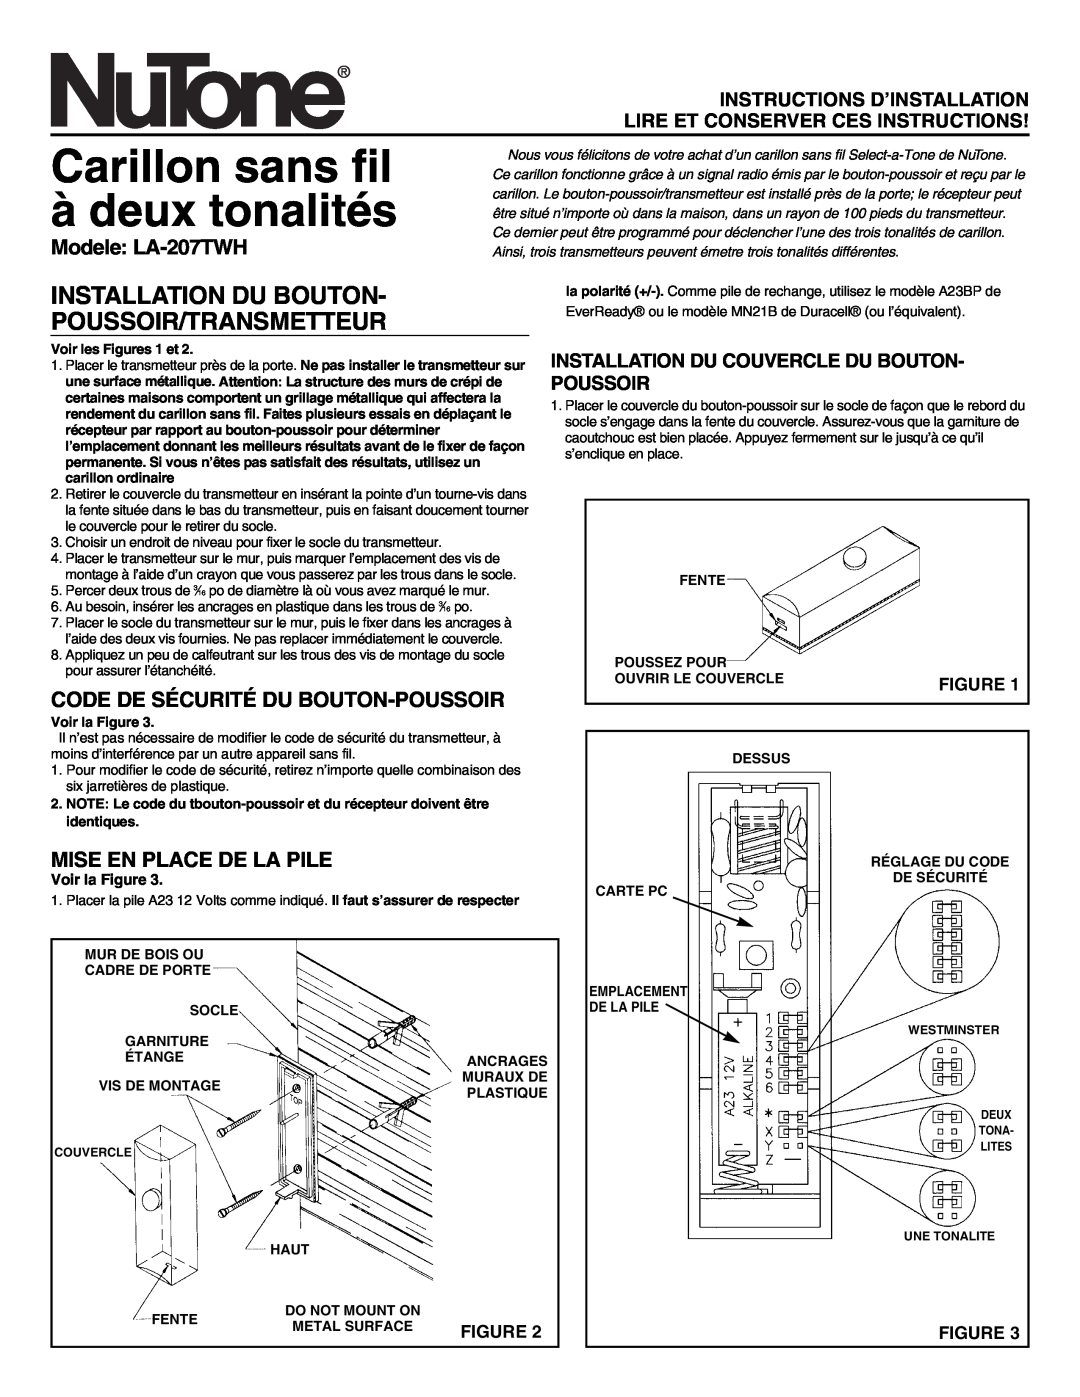 NuTone manual Carillon sans fil à deux tonalités, Installation Du Bouton Poussoir/Transmetteur, Modele LA-207TWH 